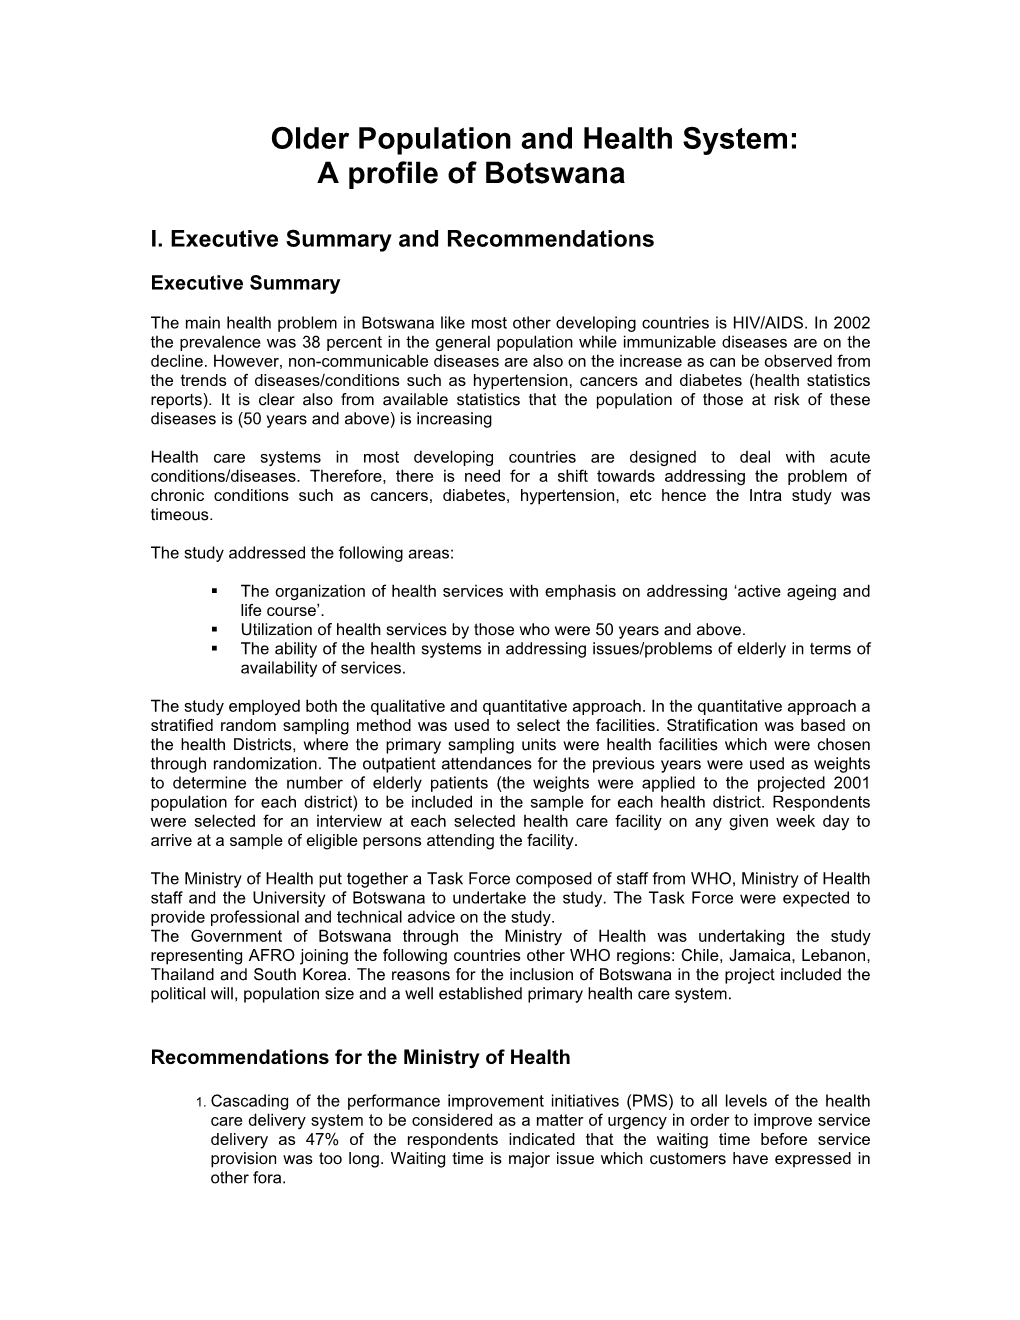 A Profile of Botswana